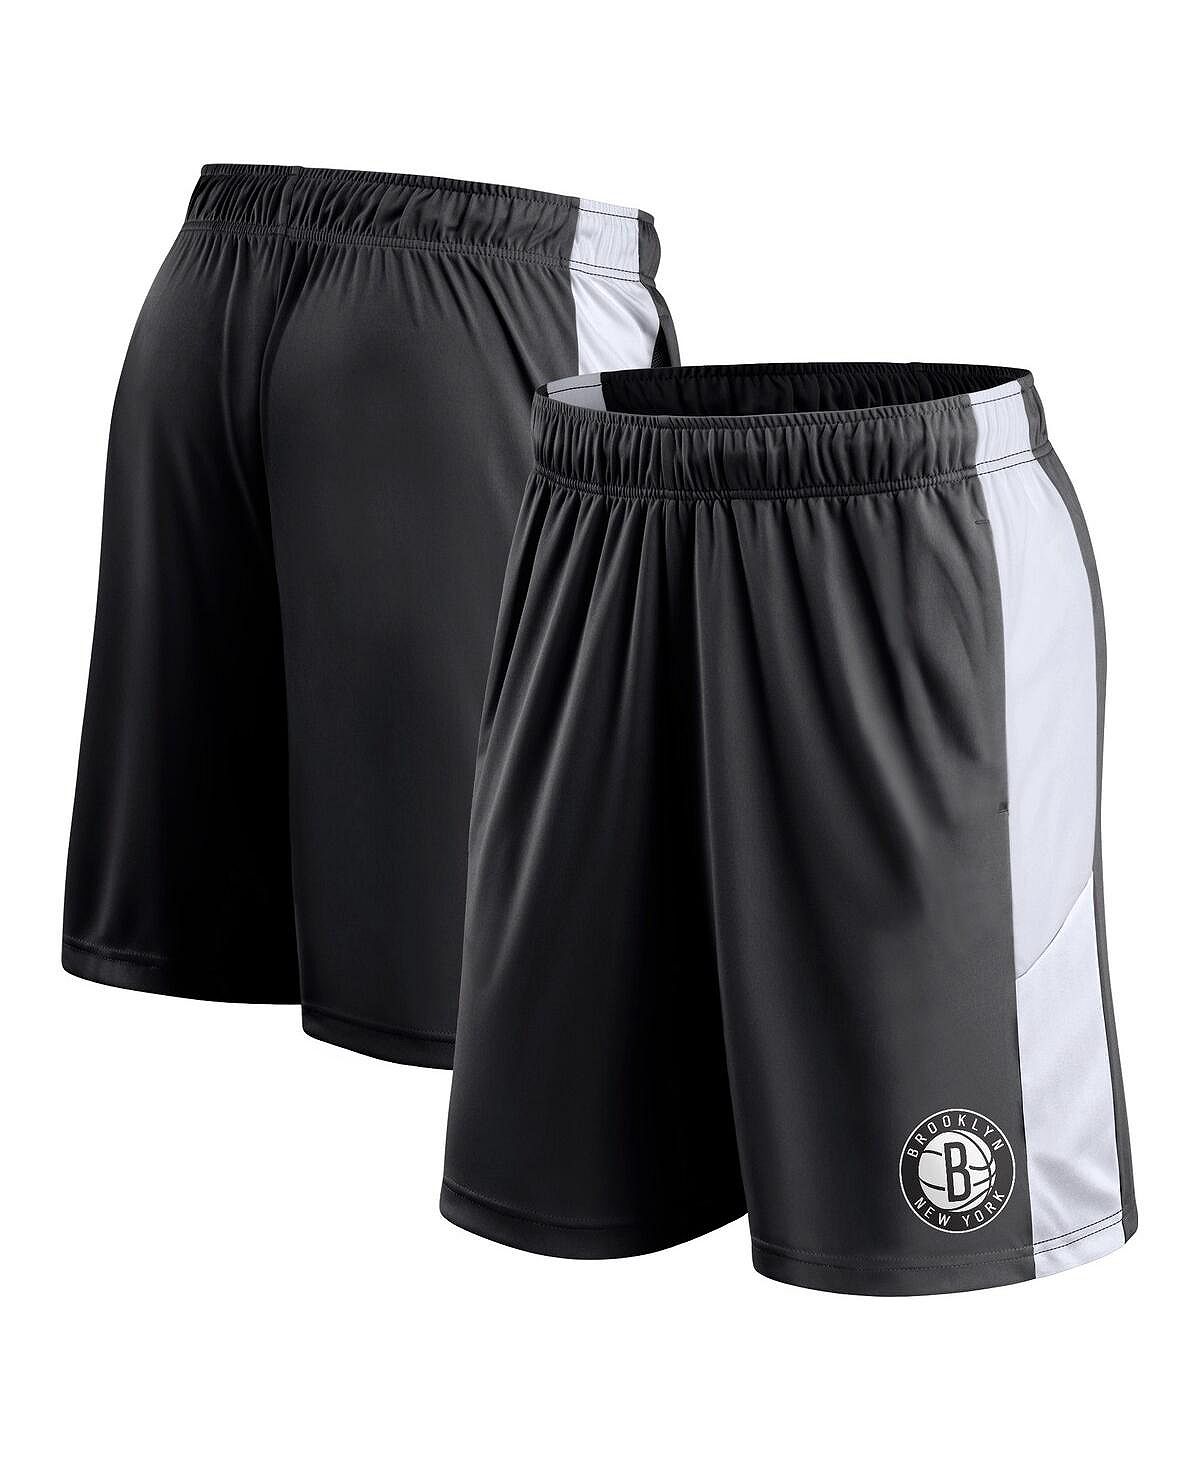 Мужские черные фирменные шорты Brooklyn Nets Champion Rush с цветными блоками Fanatics